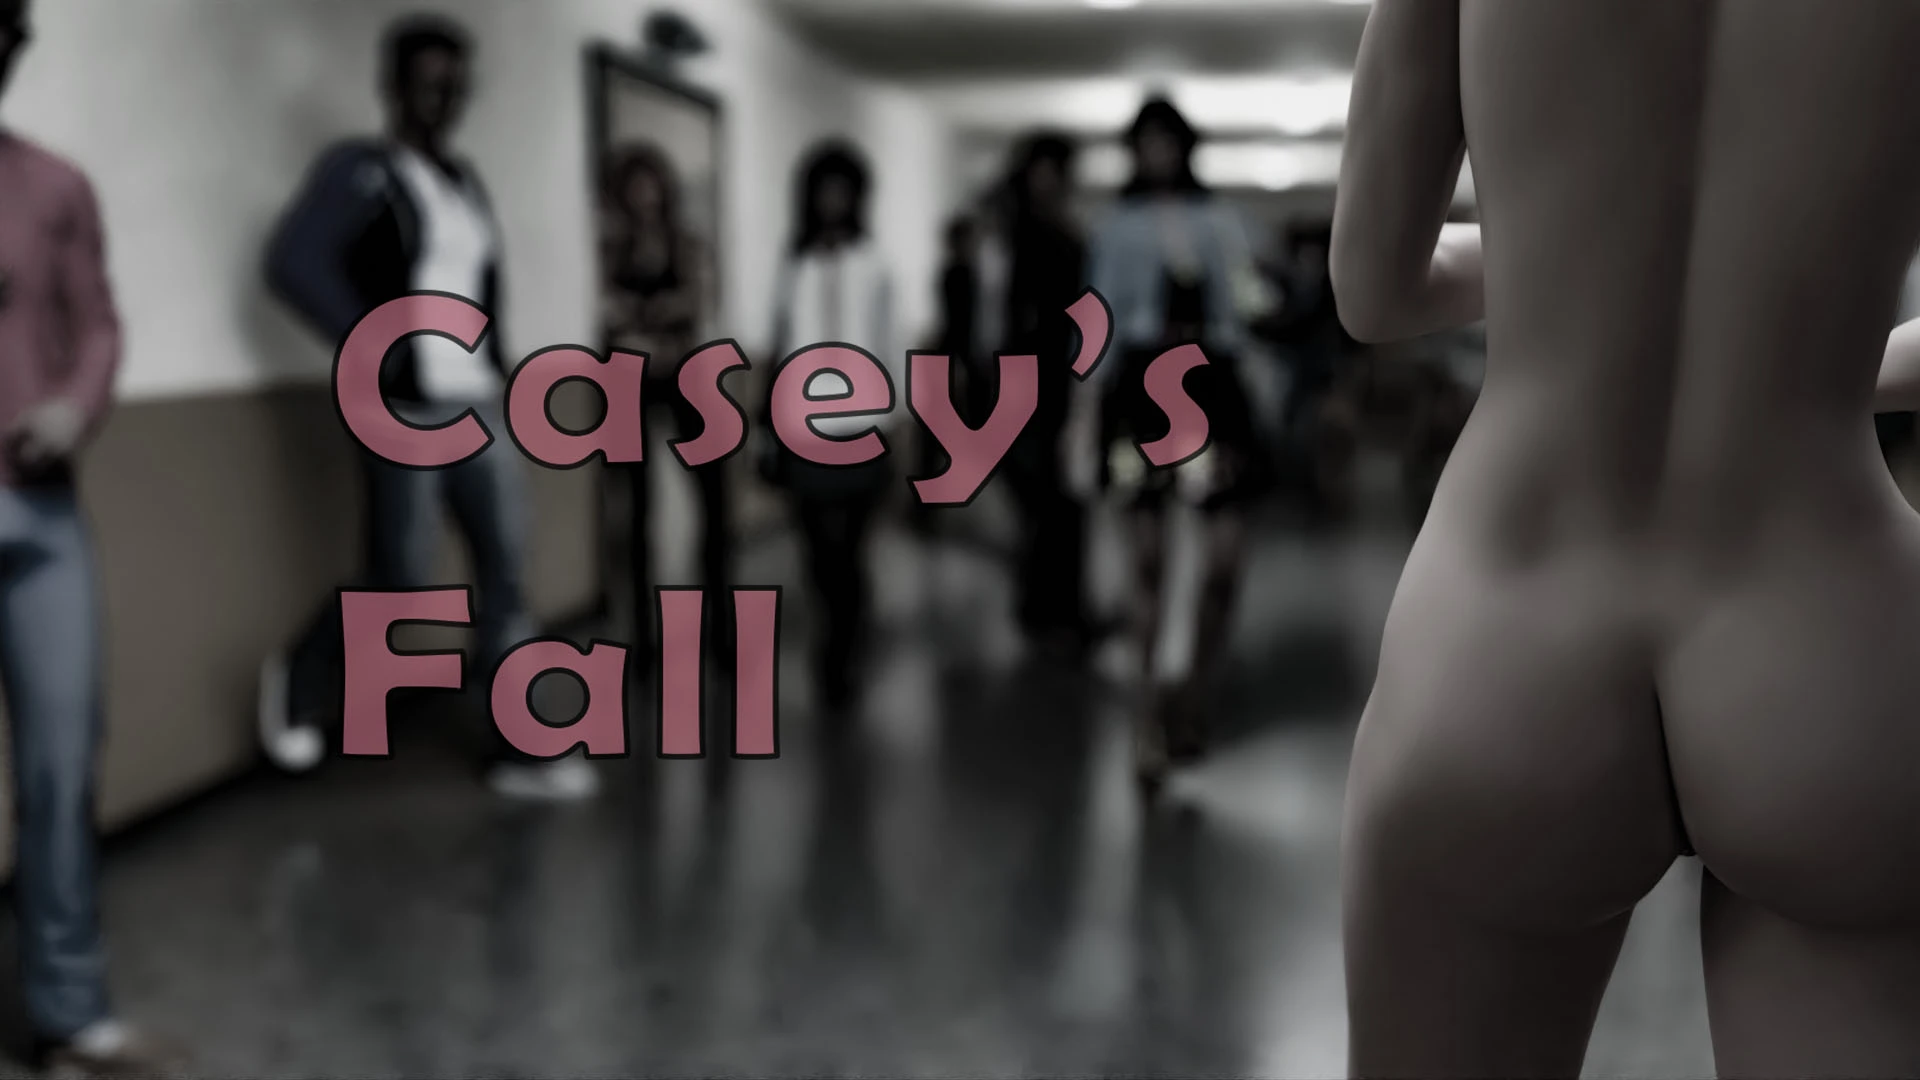 Casey's Fall [v2021-04] main image